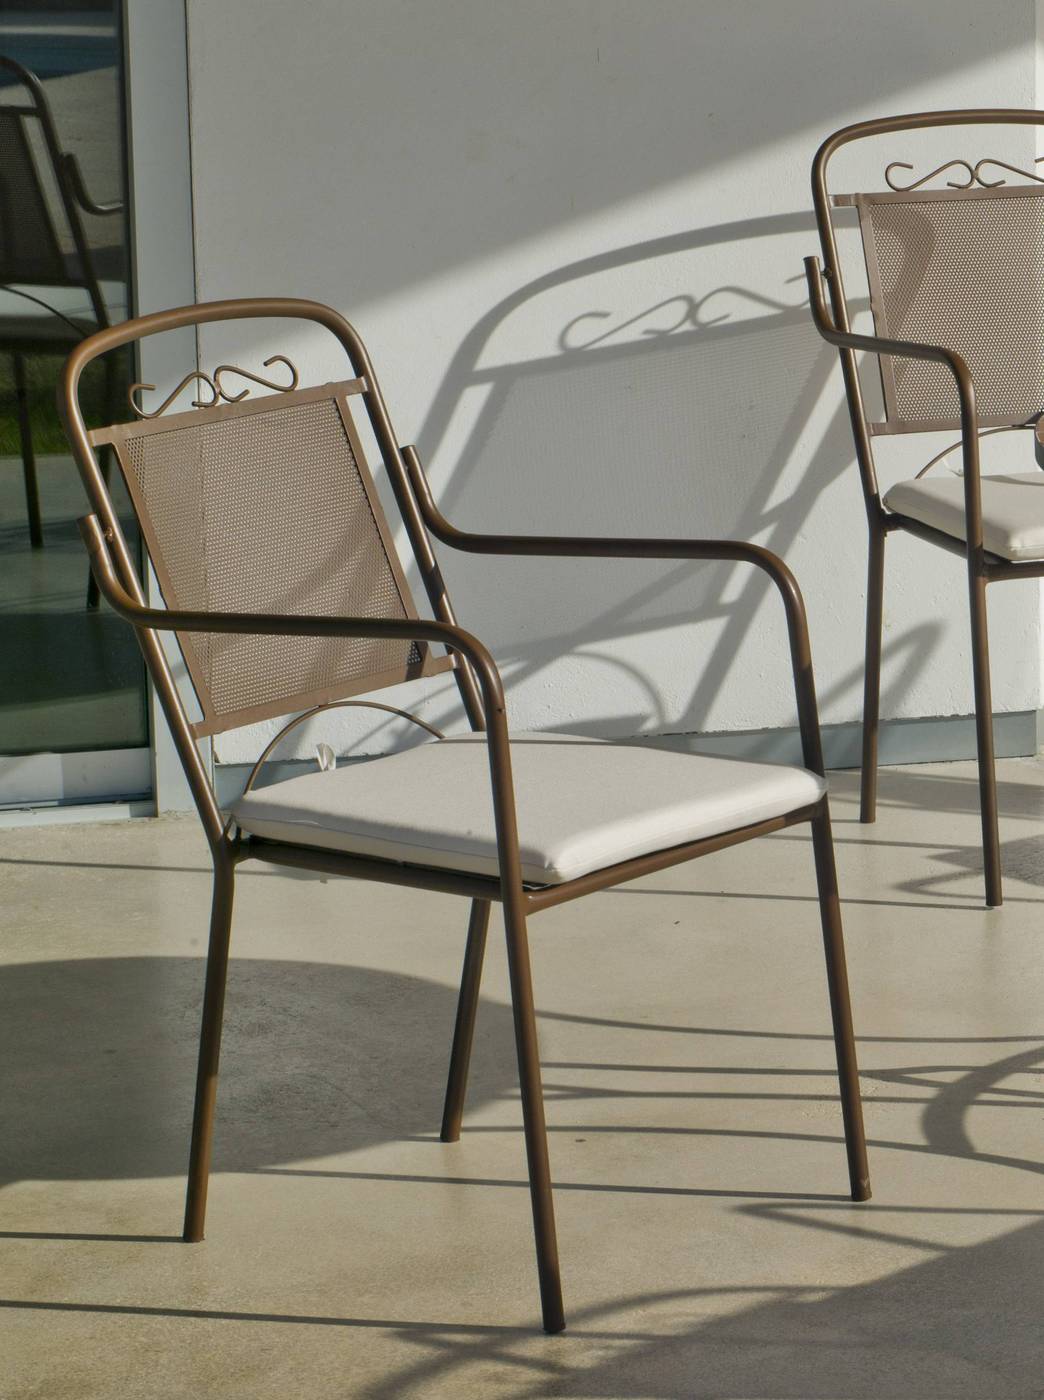 Conjunto Mosaico Telma-Caimán 90-4 - Conjunto para jardín y terraza de forja color bronce: 1 mesa redonda con tablero mosaico de 90 cm. + 4 sillones con cojines.